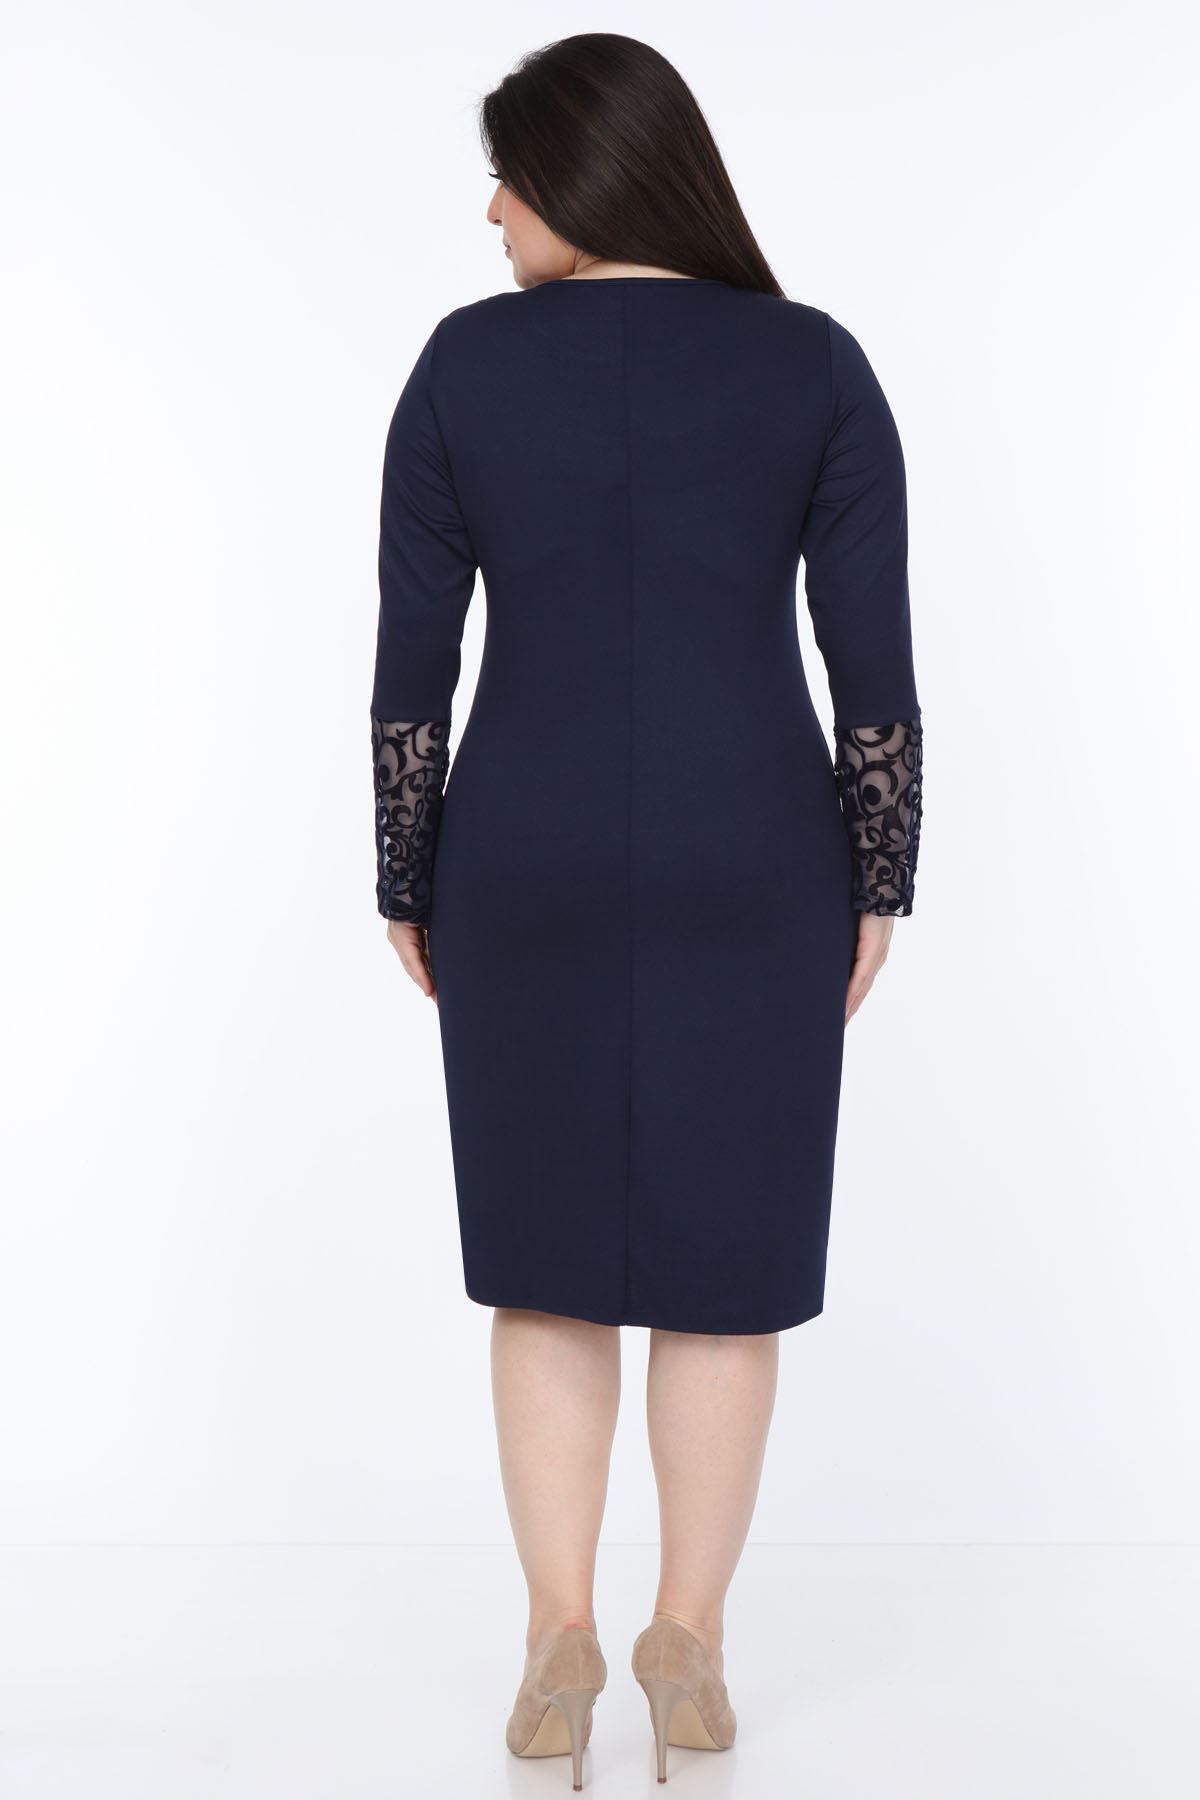 Lacivert İspanyol Kol Büyük Beden Elbise 30Y-1051